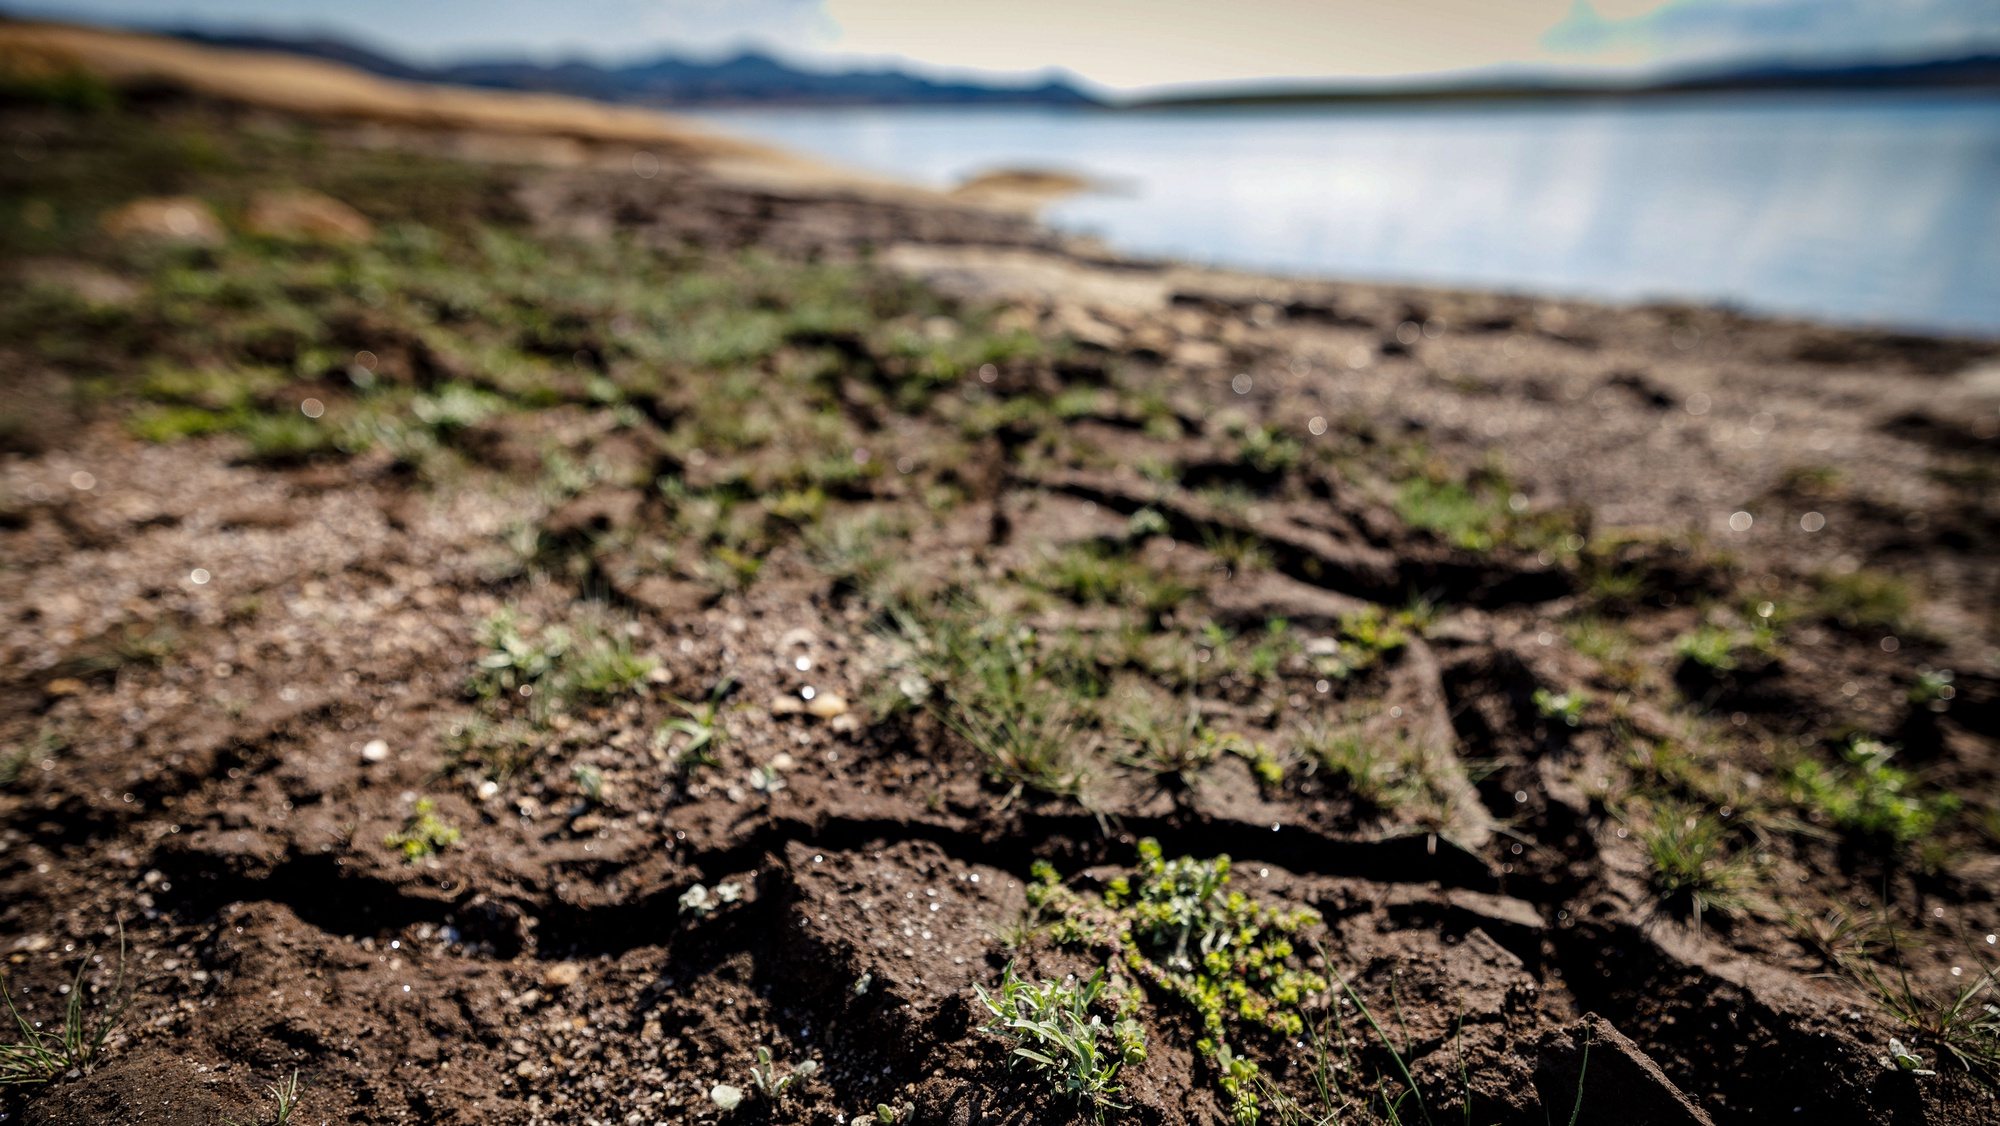 Efeitos da seca na Barragem Alto Rabagão, em Montalegre, 6 de julho de 2022. No Norte do país, as barragens do Alto-Lindoso e do Alto Rabagão estão com níveis de água historicamente baixos, prejudicando a agricultura e o turismo. PEDRO SARMENTO COSTA/LUSA